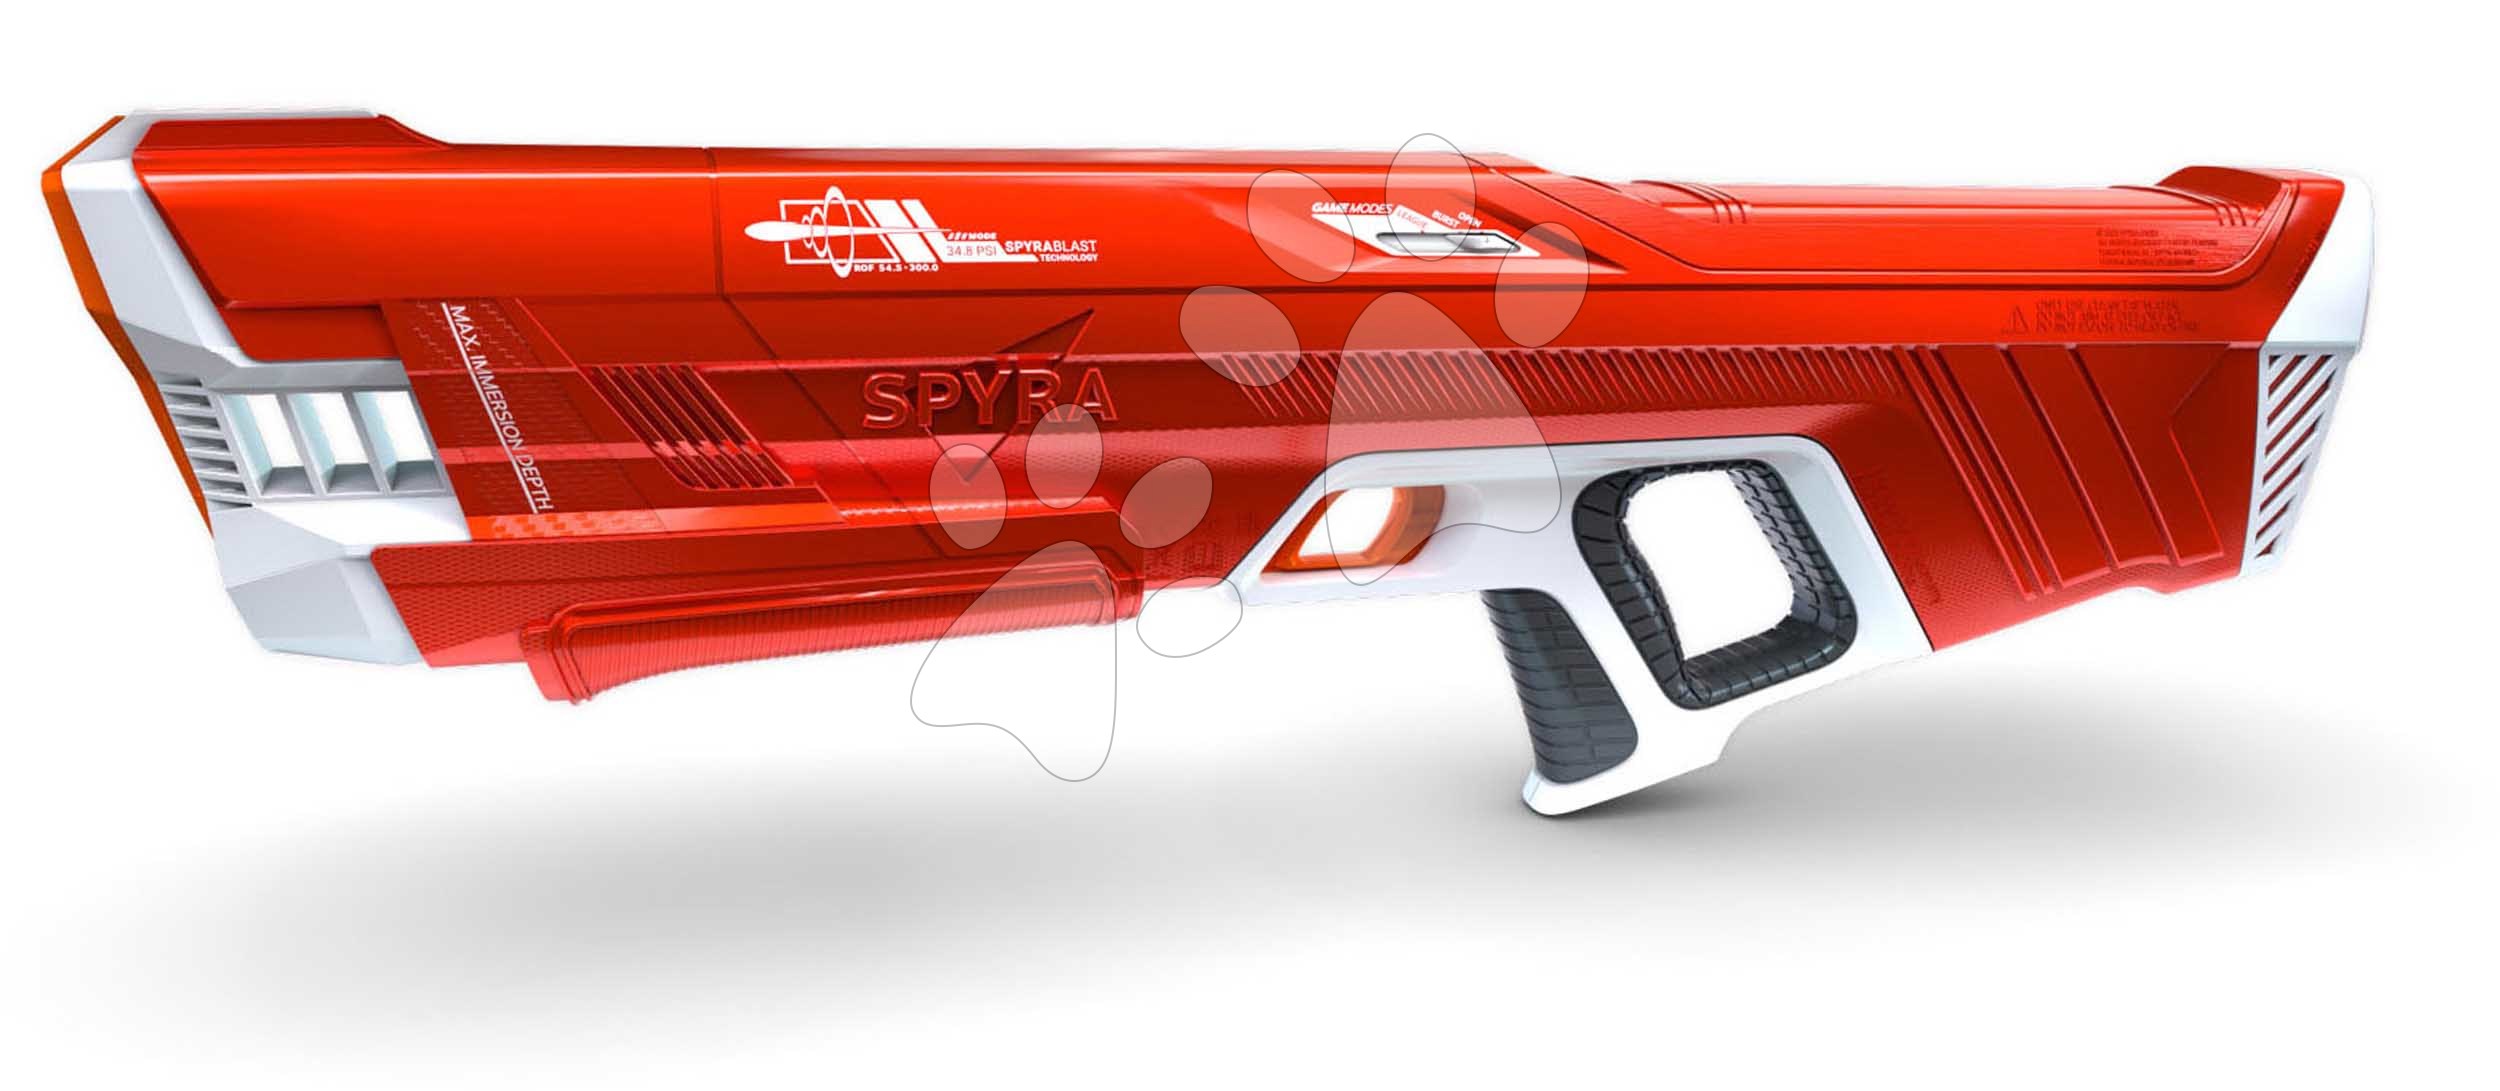 Vodná pištoľ plne elektronická s automatickým nabíjaním vodou SpyraThree Red Spyra s elektronickým digitálnym displejom a 3 režimy streľby s dostrelom 15 metrov červená od 14 rokov